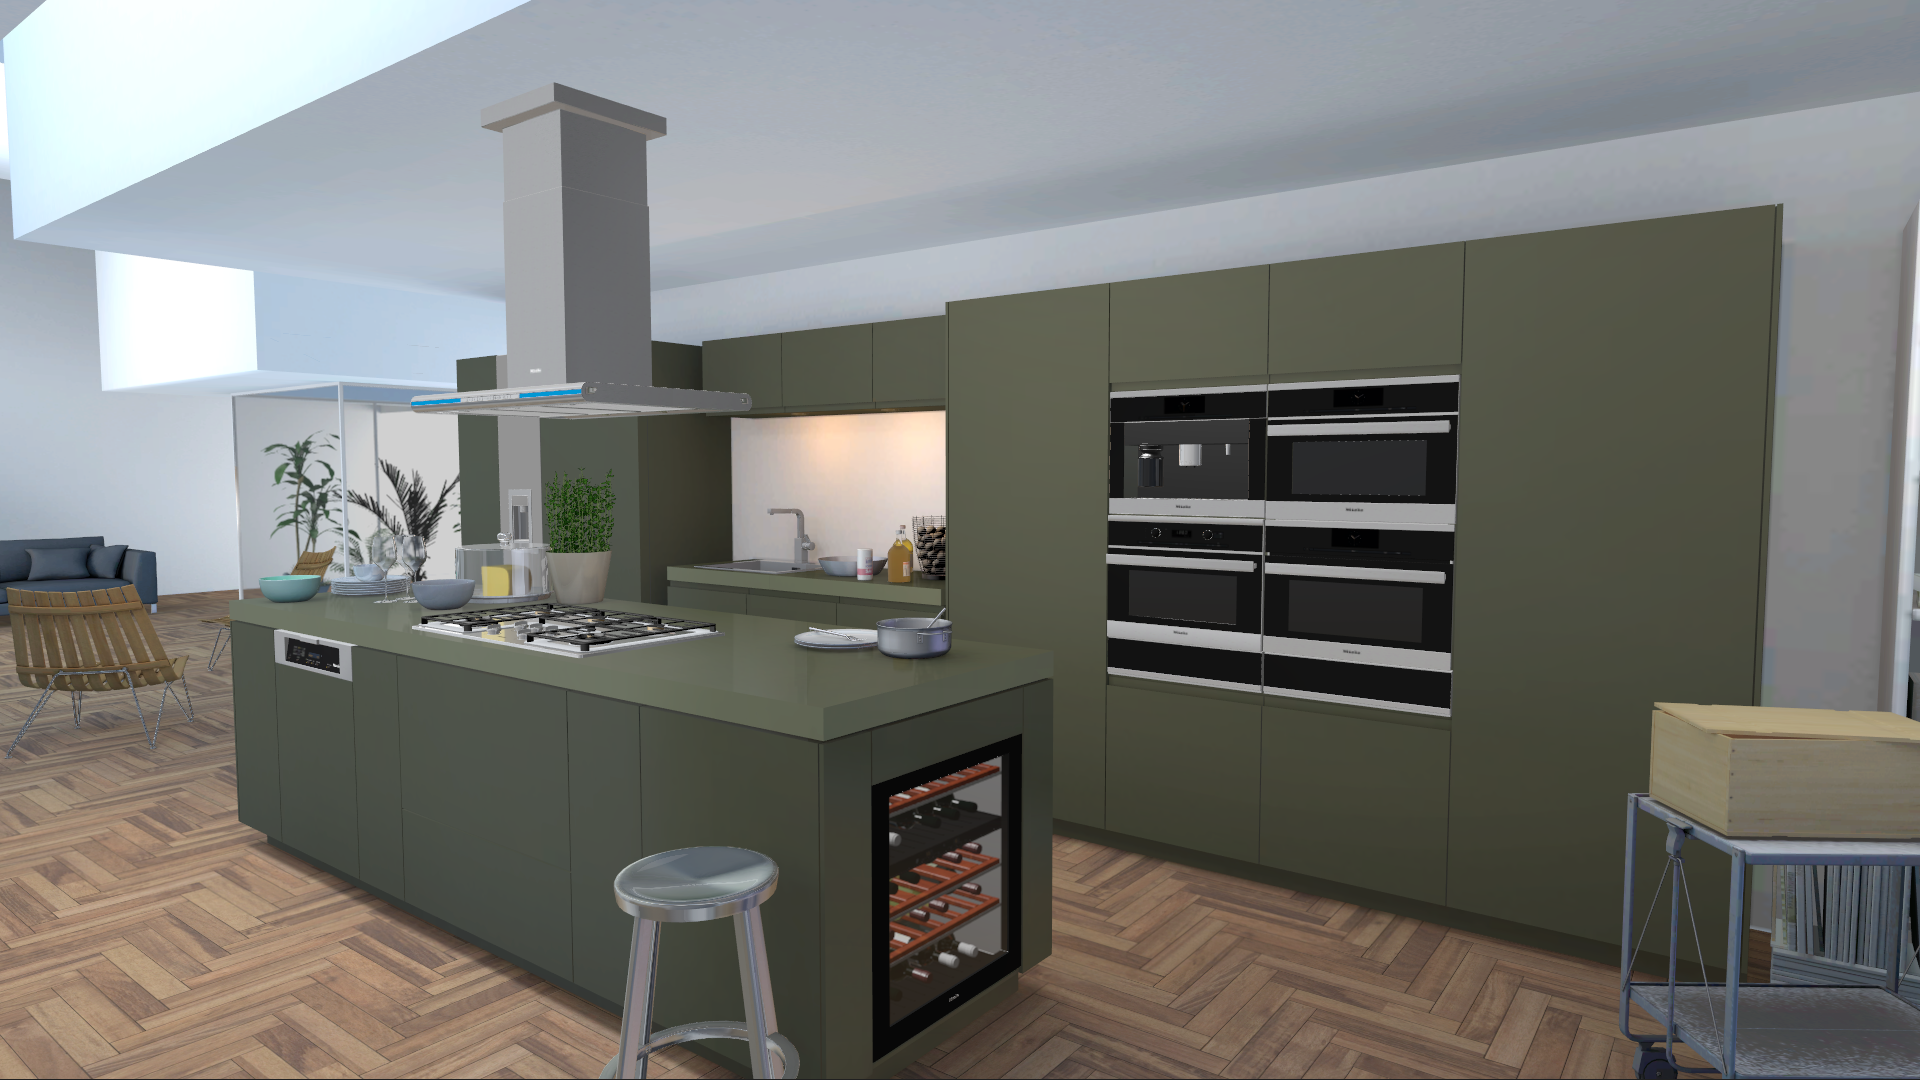 miele kitchen appliance visualizer visualisierung kueche khaki 